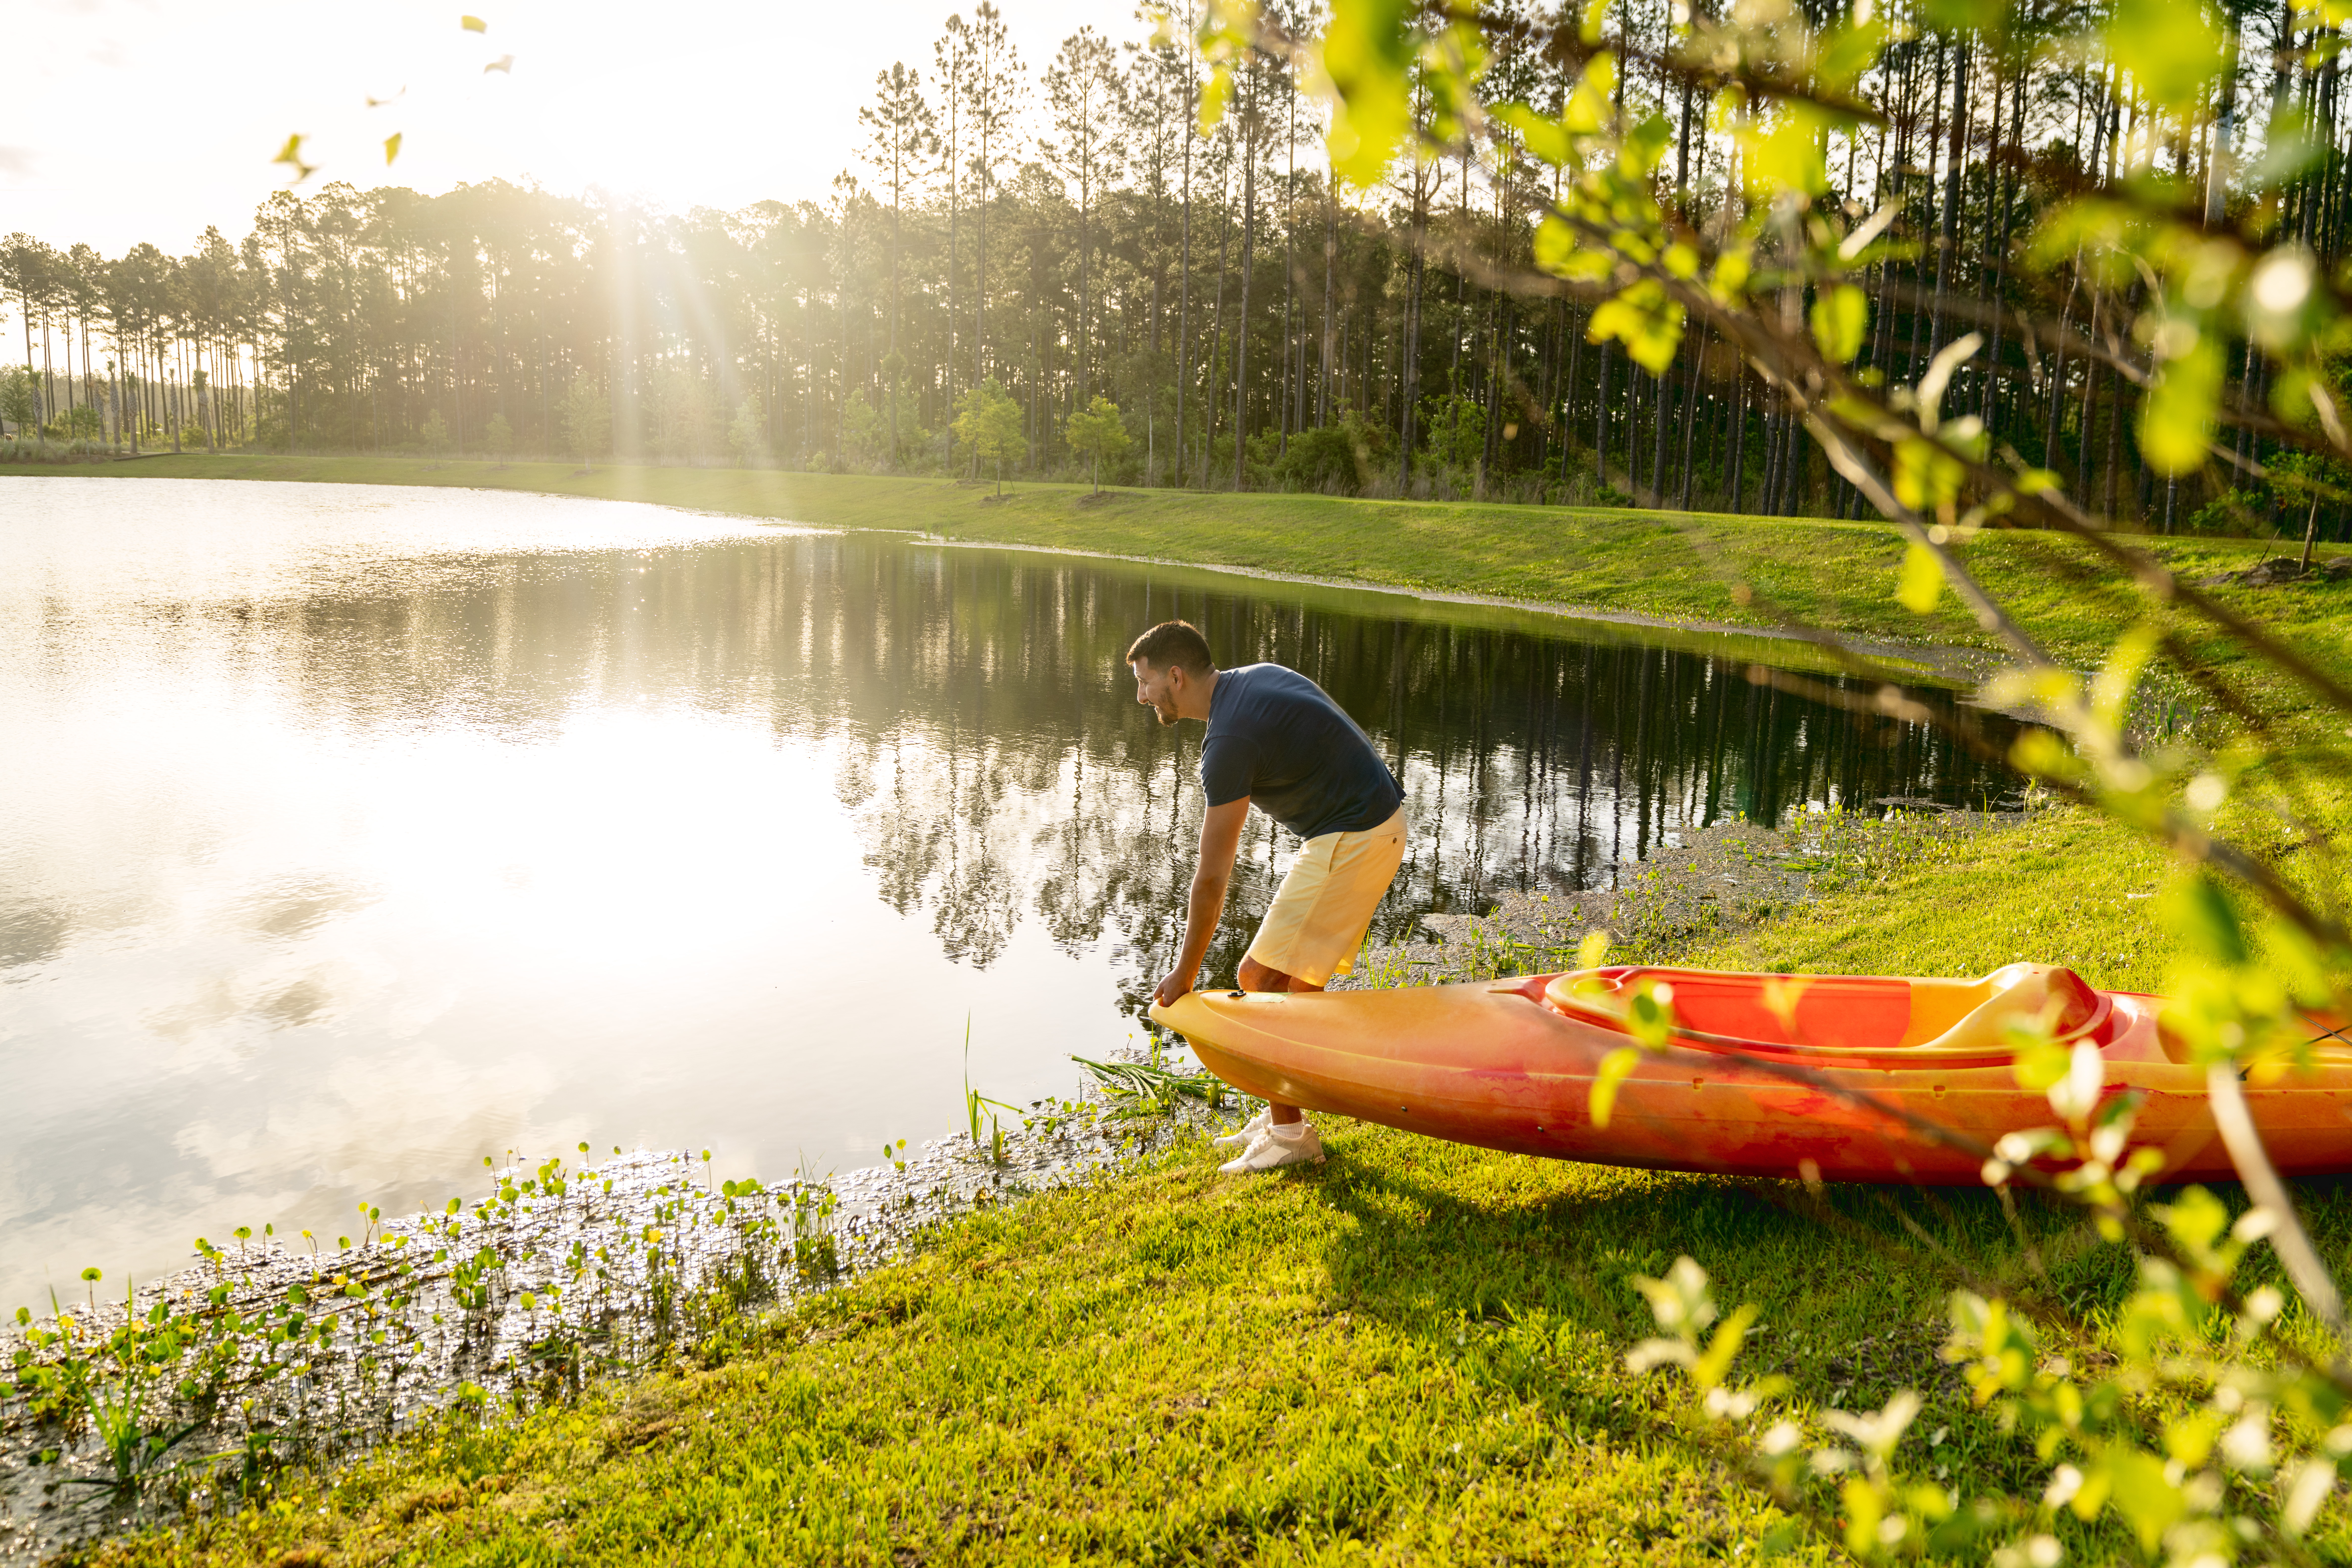 Man putting kayak in pond.